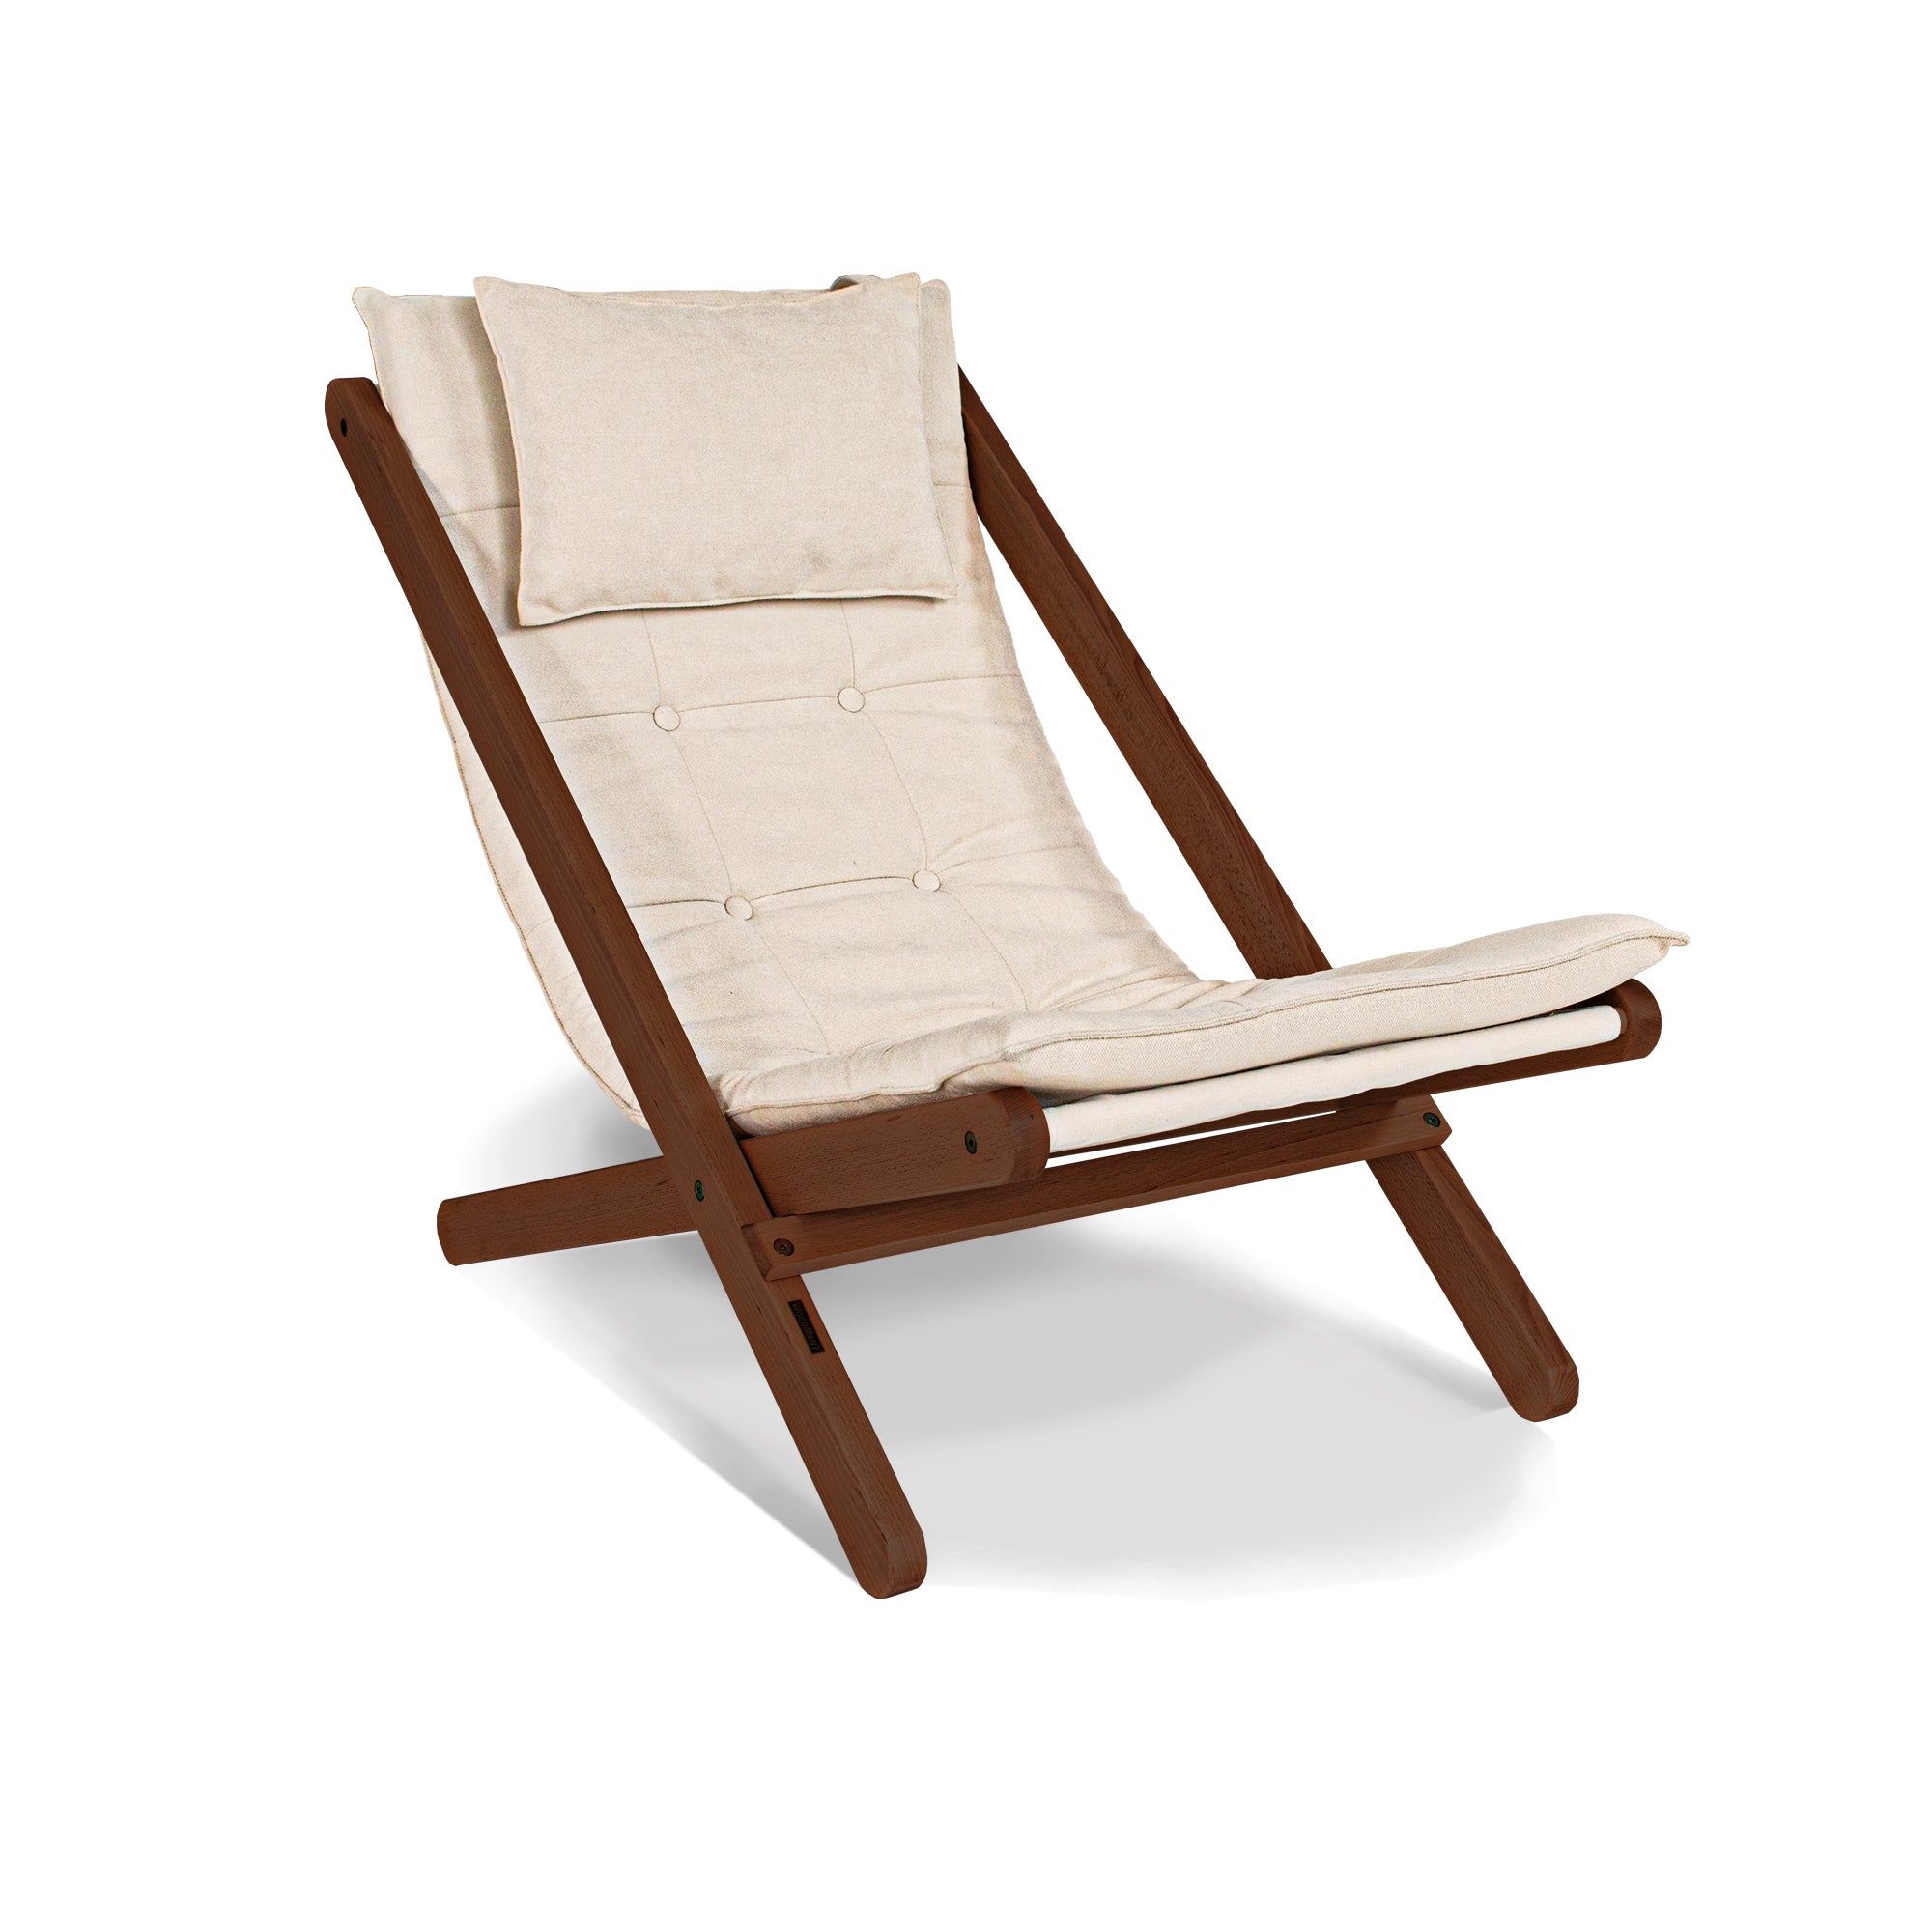 ALLEGRO Deckchair -creamy fabric-walnut frame